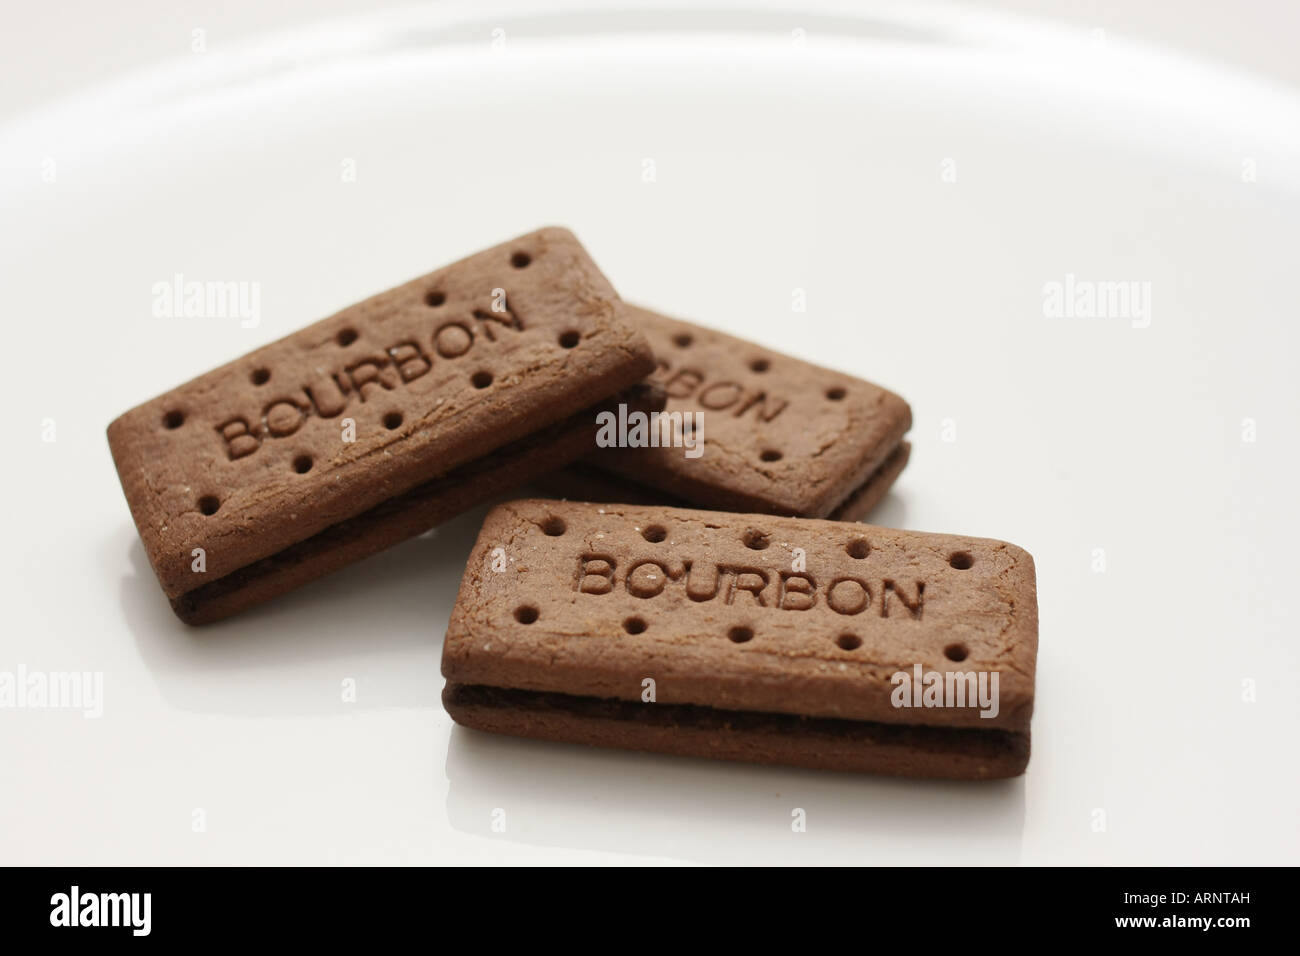 Drei Bourbon Kekse auf einem weißen Teller angeordnet Stockfoto